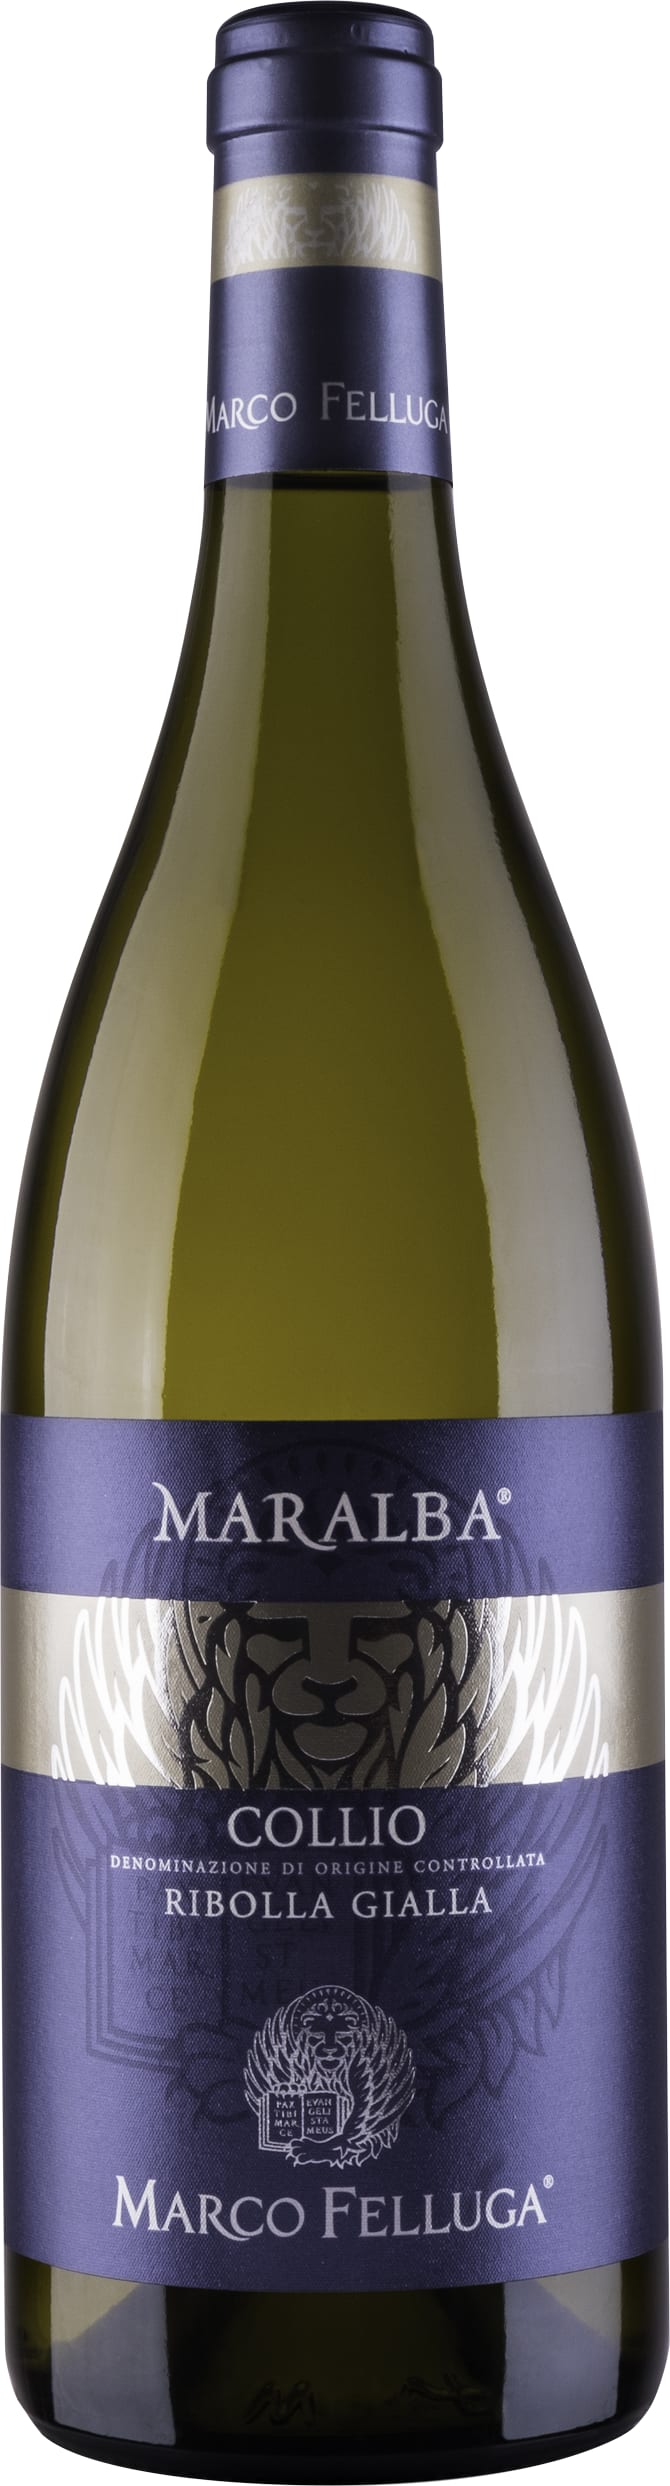 Marco Felluga Collio Ribolla Gialla Maralba 2022 75cl - Buy Marco Felluga Wines from GREAT WINES DIRECT wine shop